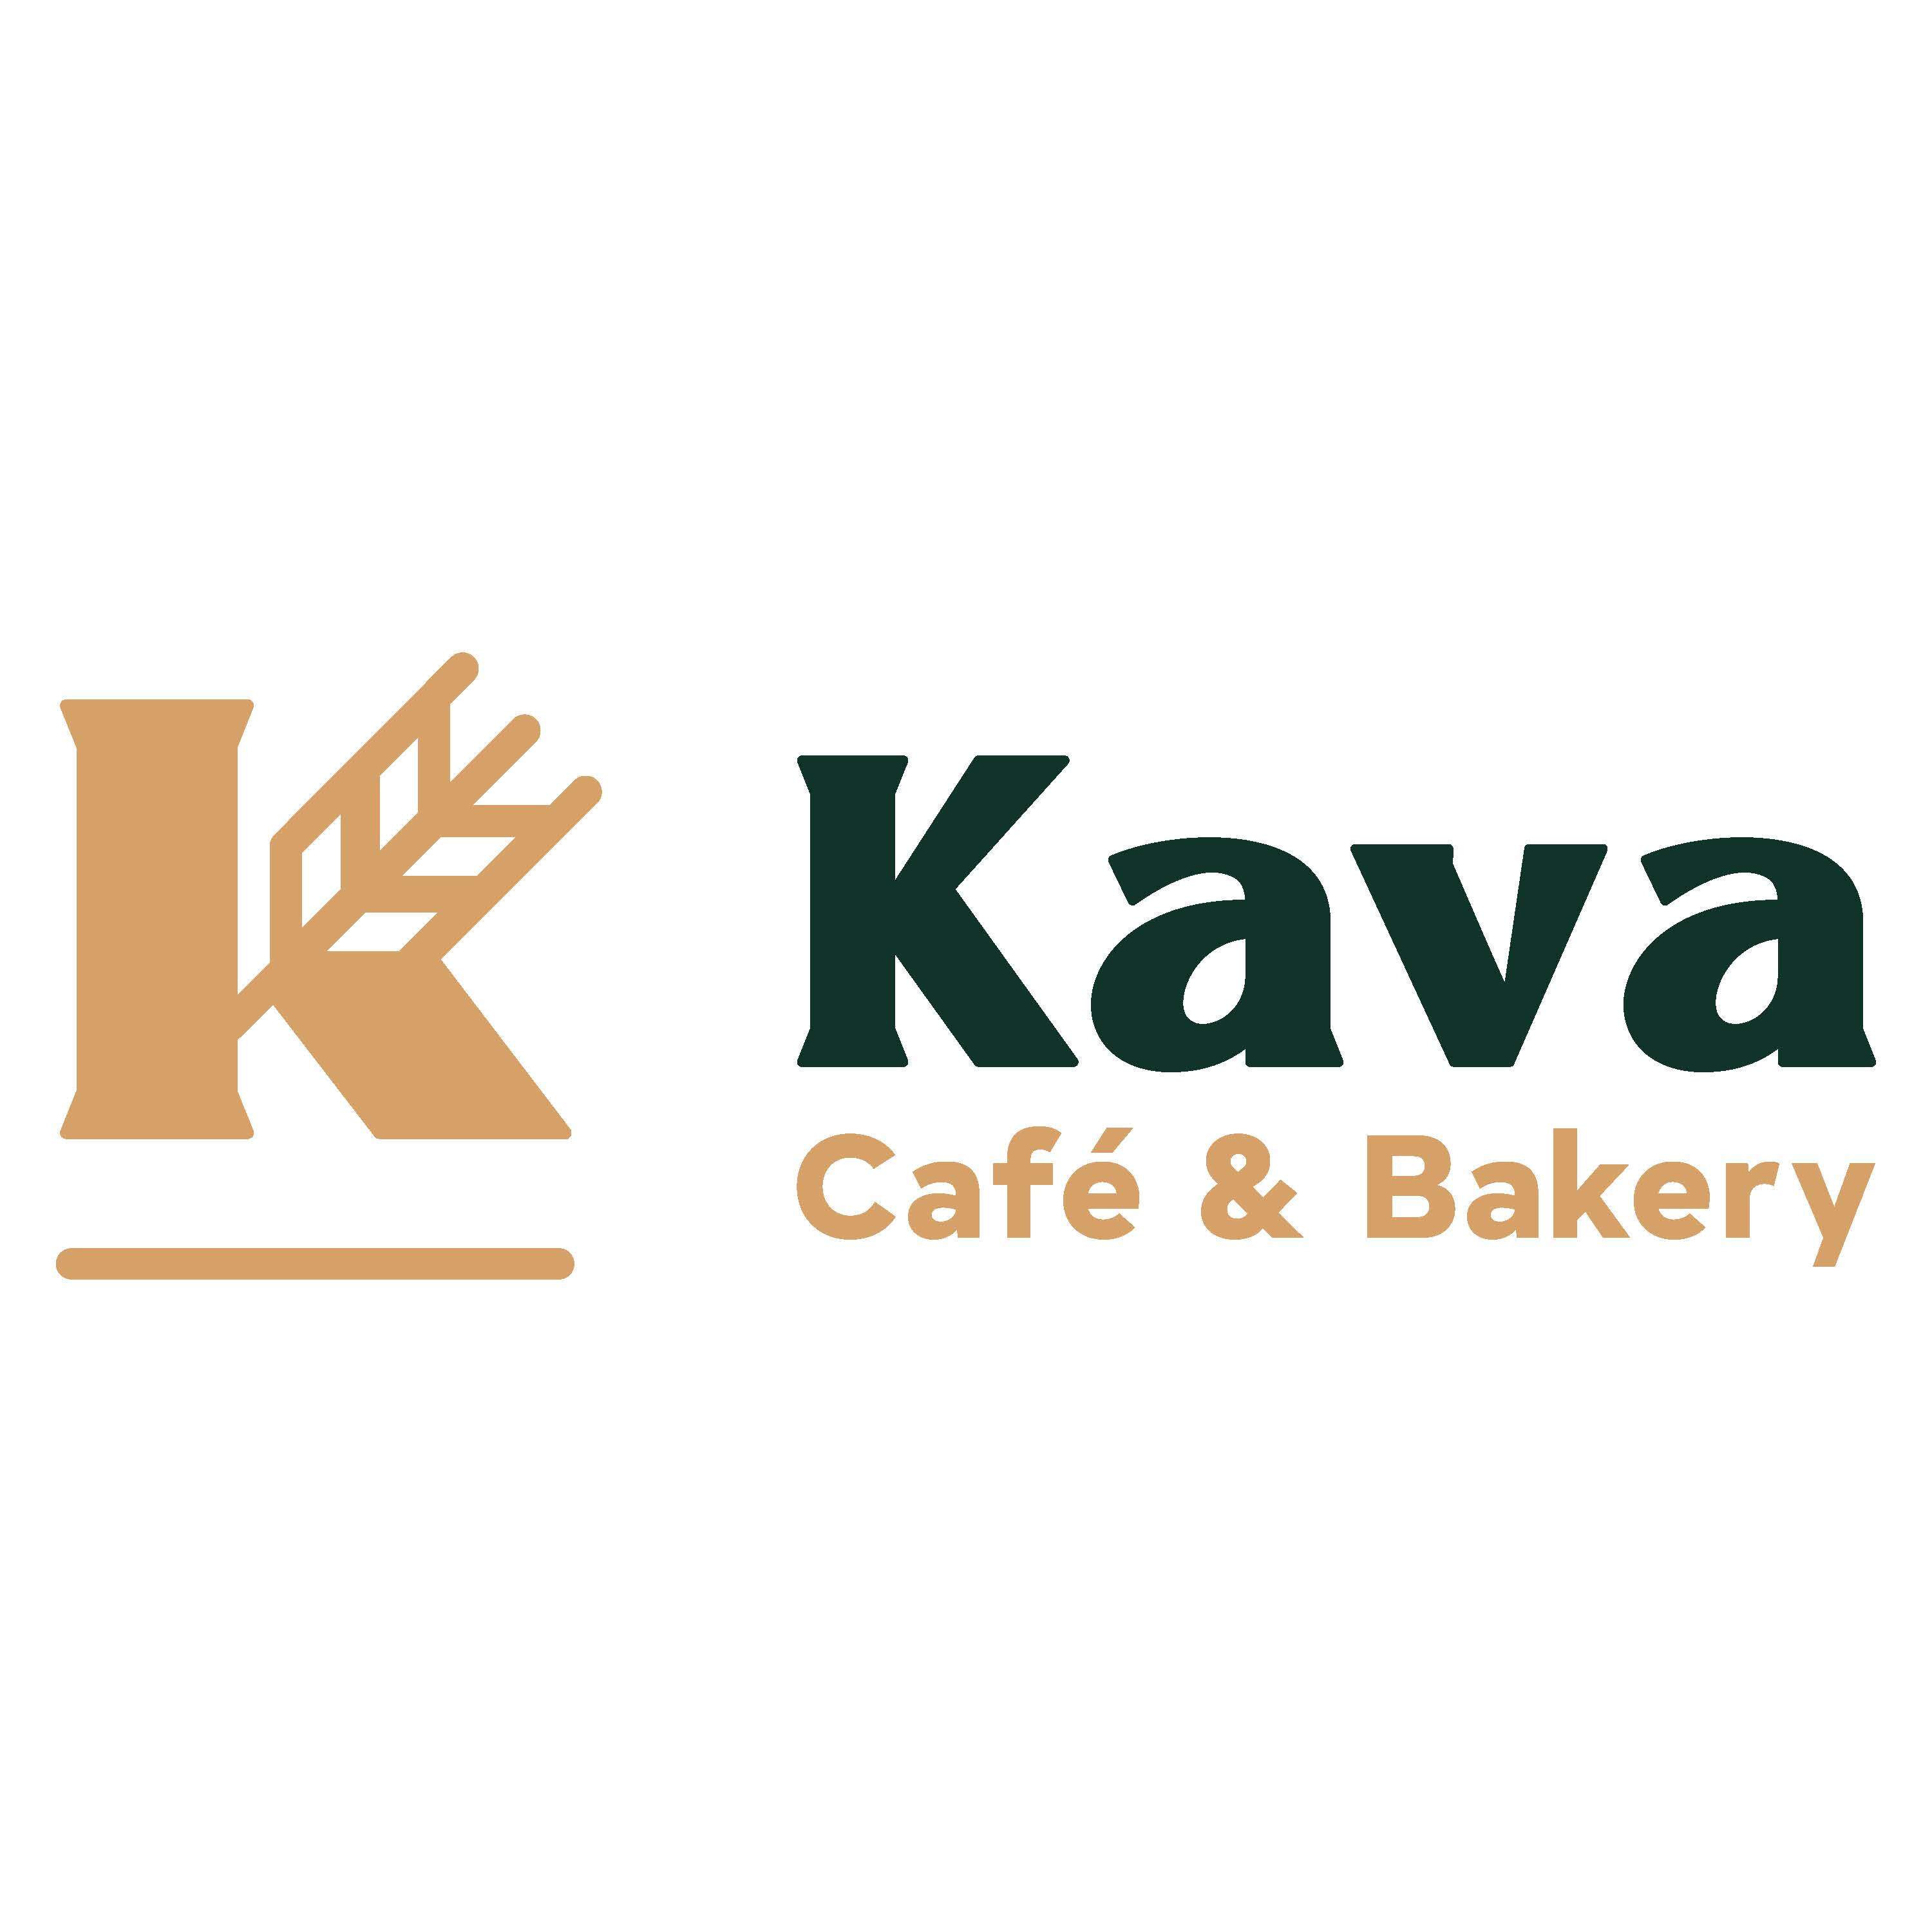 Kava Cafe & Bakery